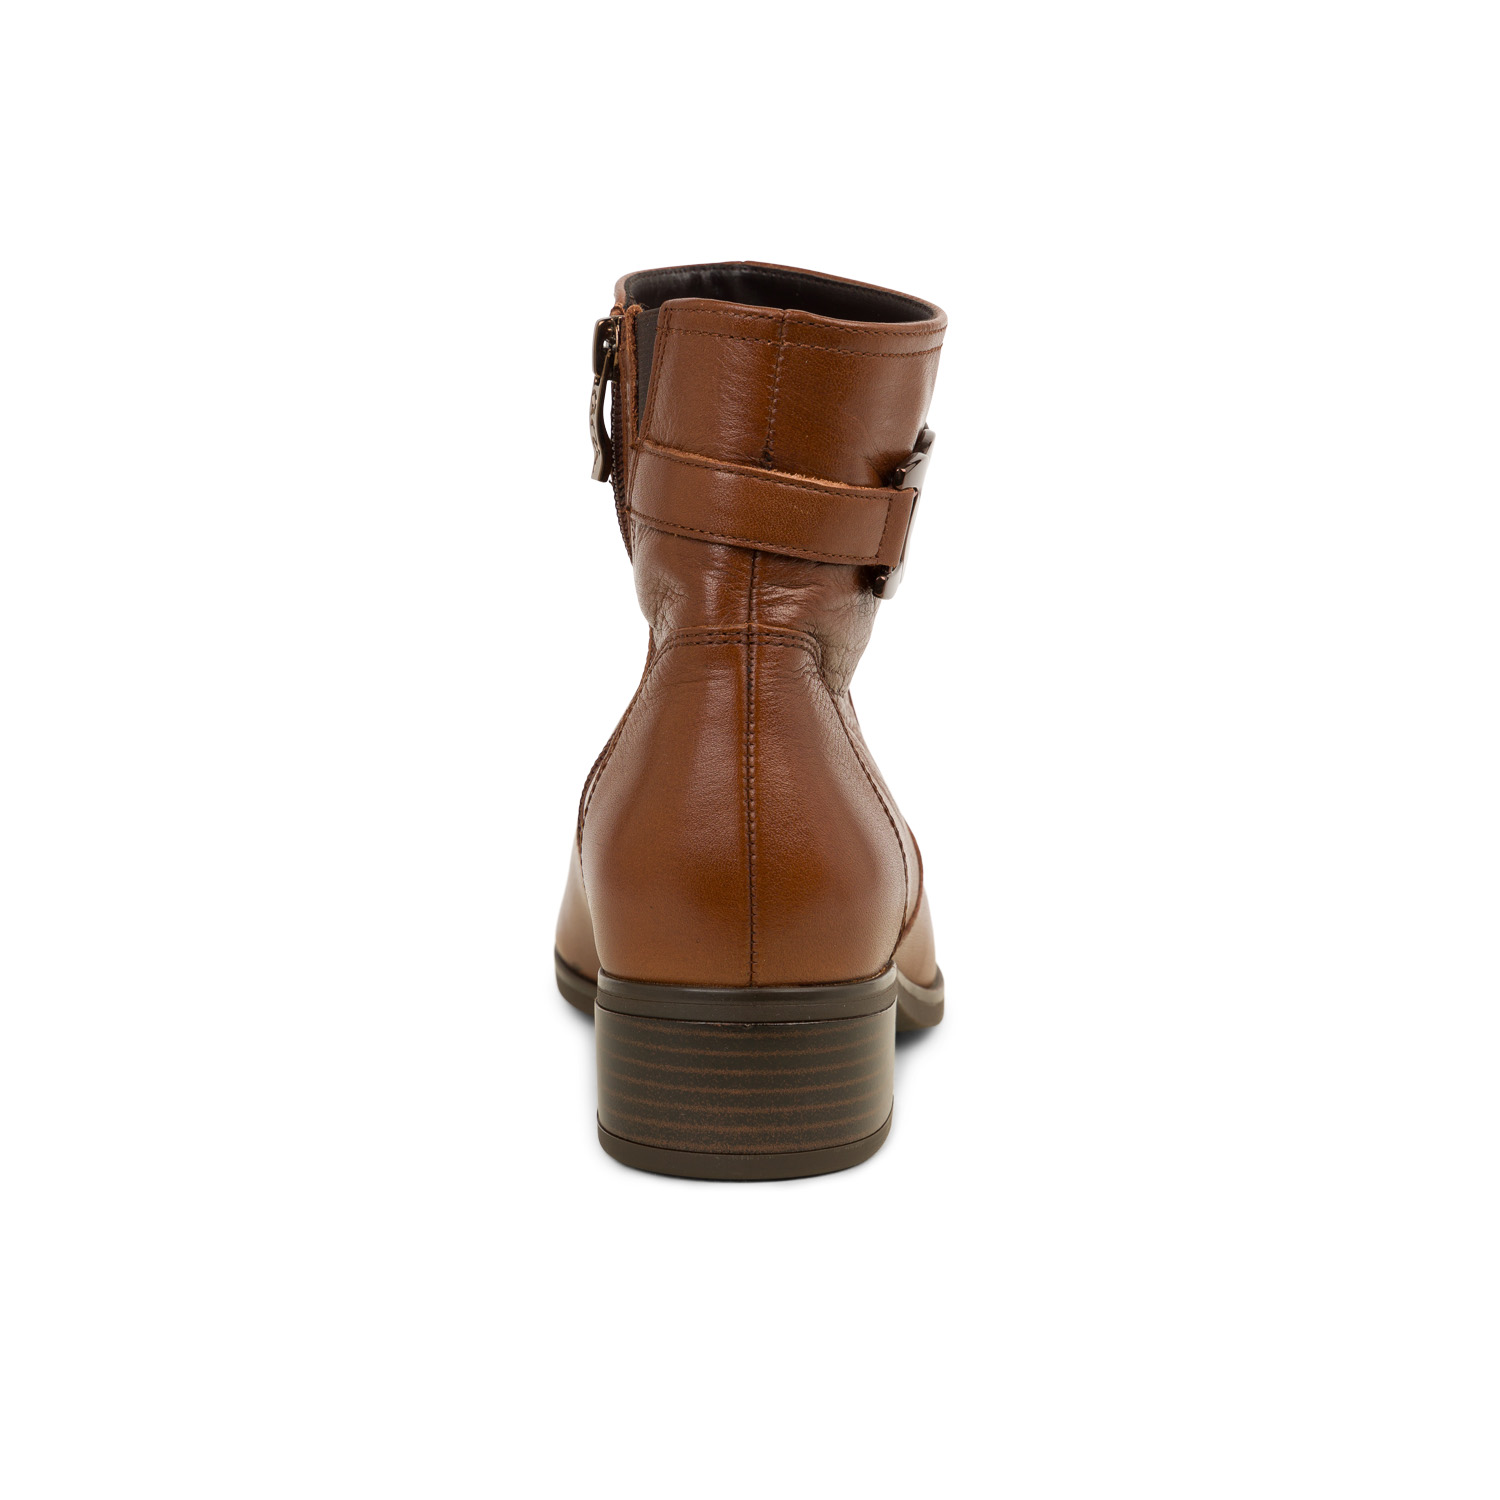 03 - ARCOLI - ARA - Boots et bottines - Cuir